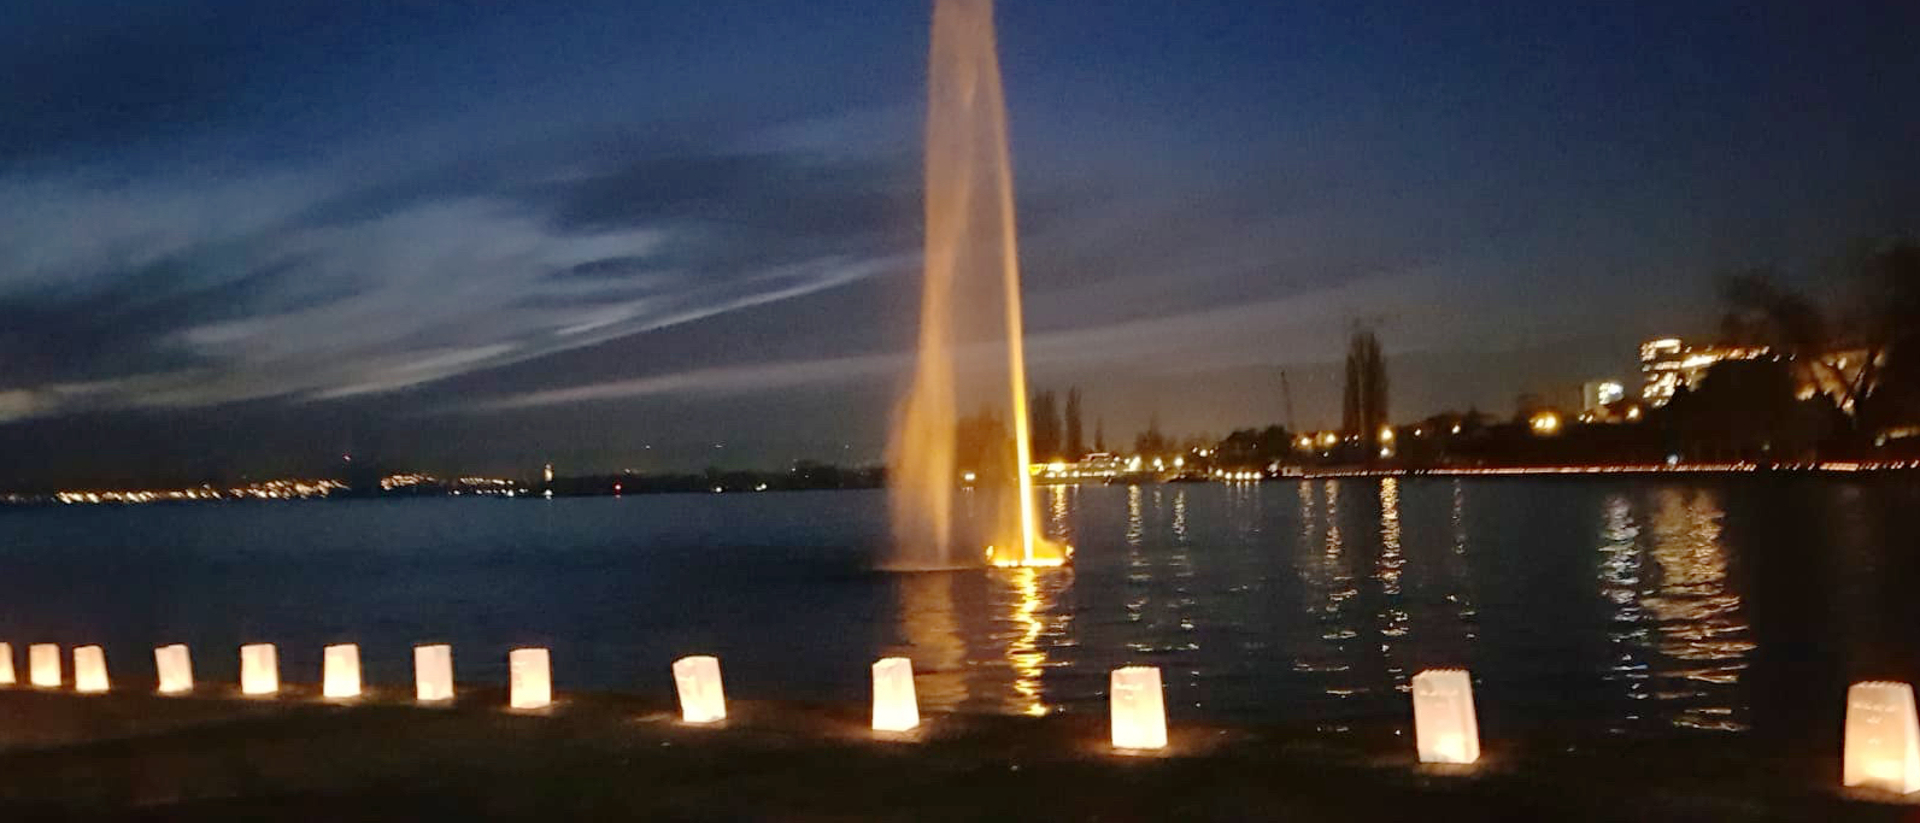 Lichttüten bilden eine Kette am Seeufer.